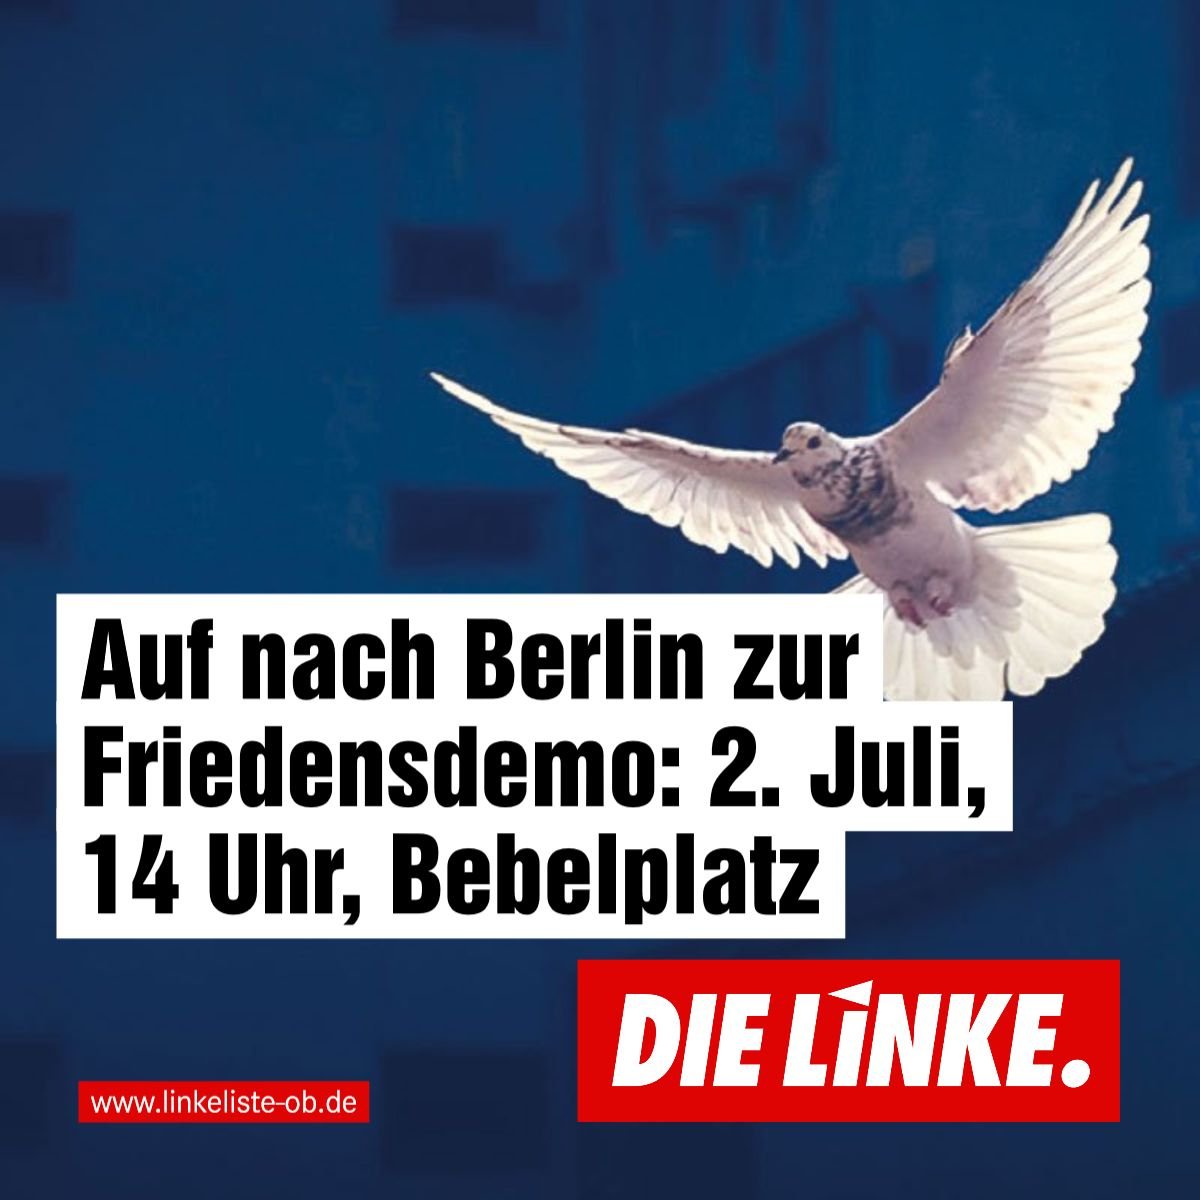 DIE LINKE.LISTE ruft zur Teilnahme an bundesweiter Friedensdemonstration auf –   Kritik an Äußerungen der evangelischen Kirche zu Waffenlieferungen